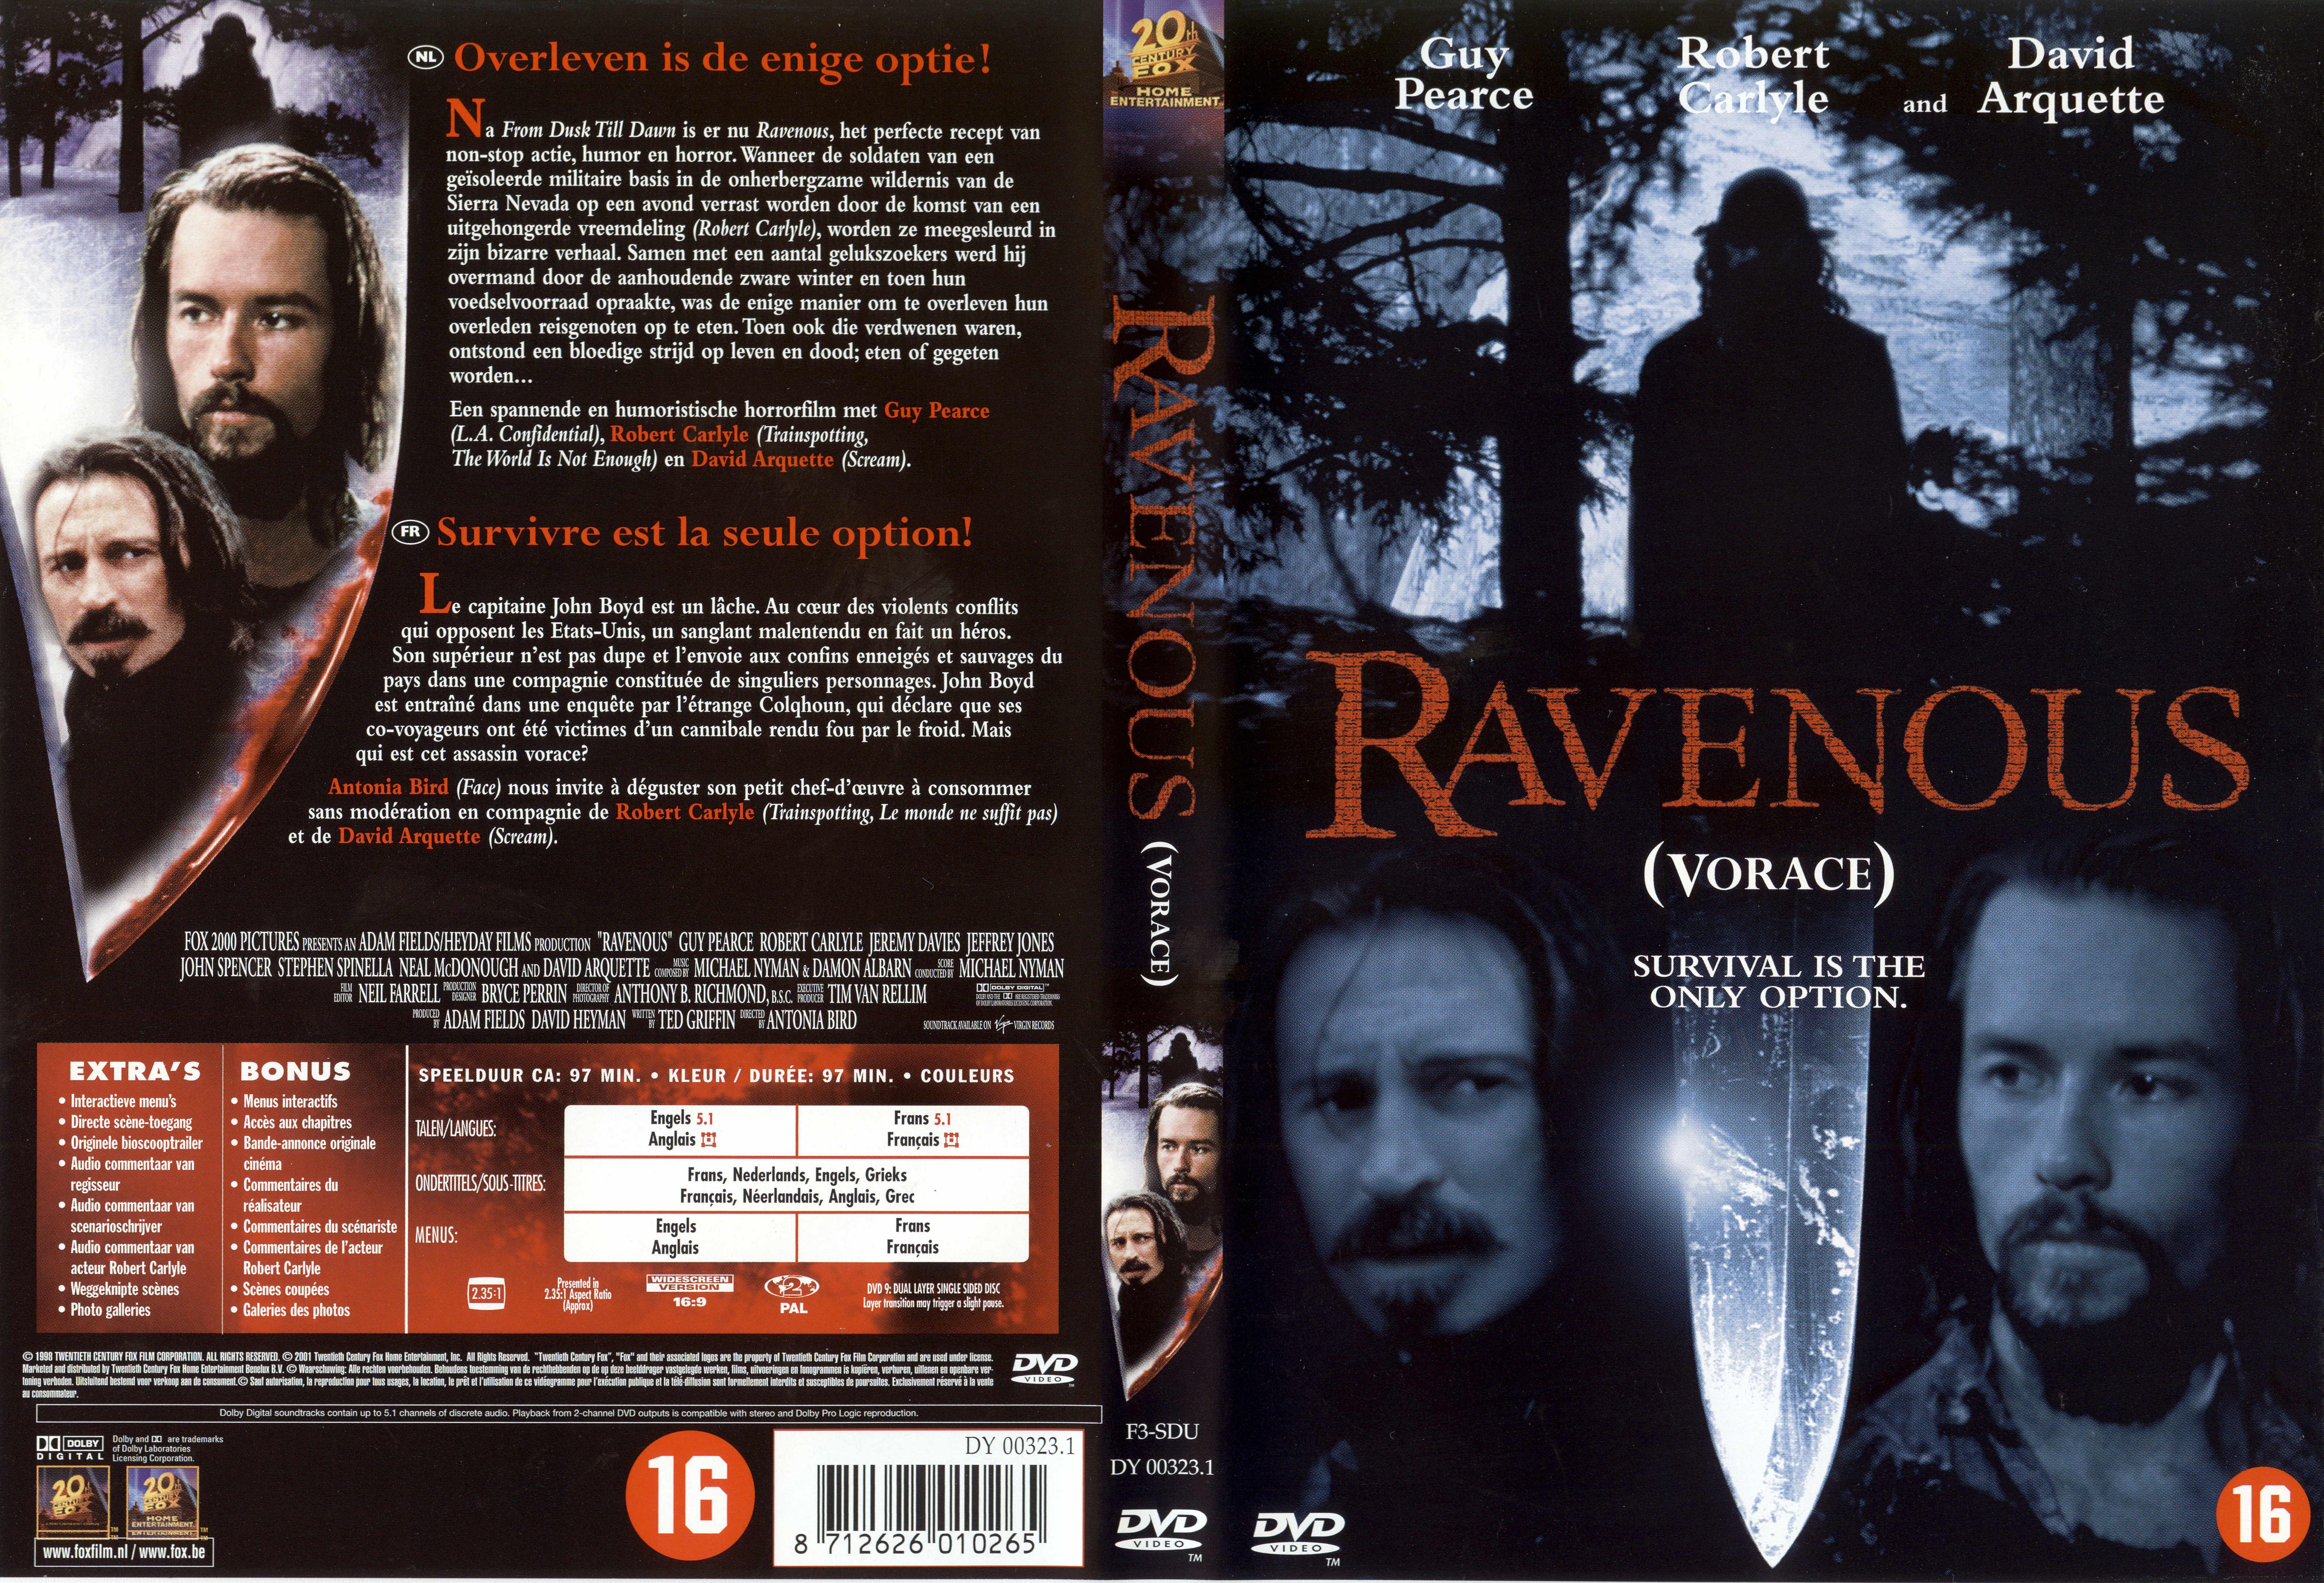 Jaquette DVD Ravenous - Vorace